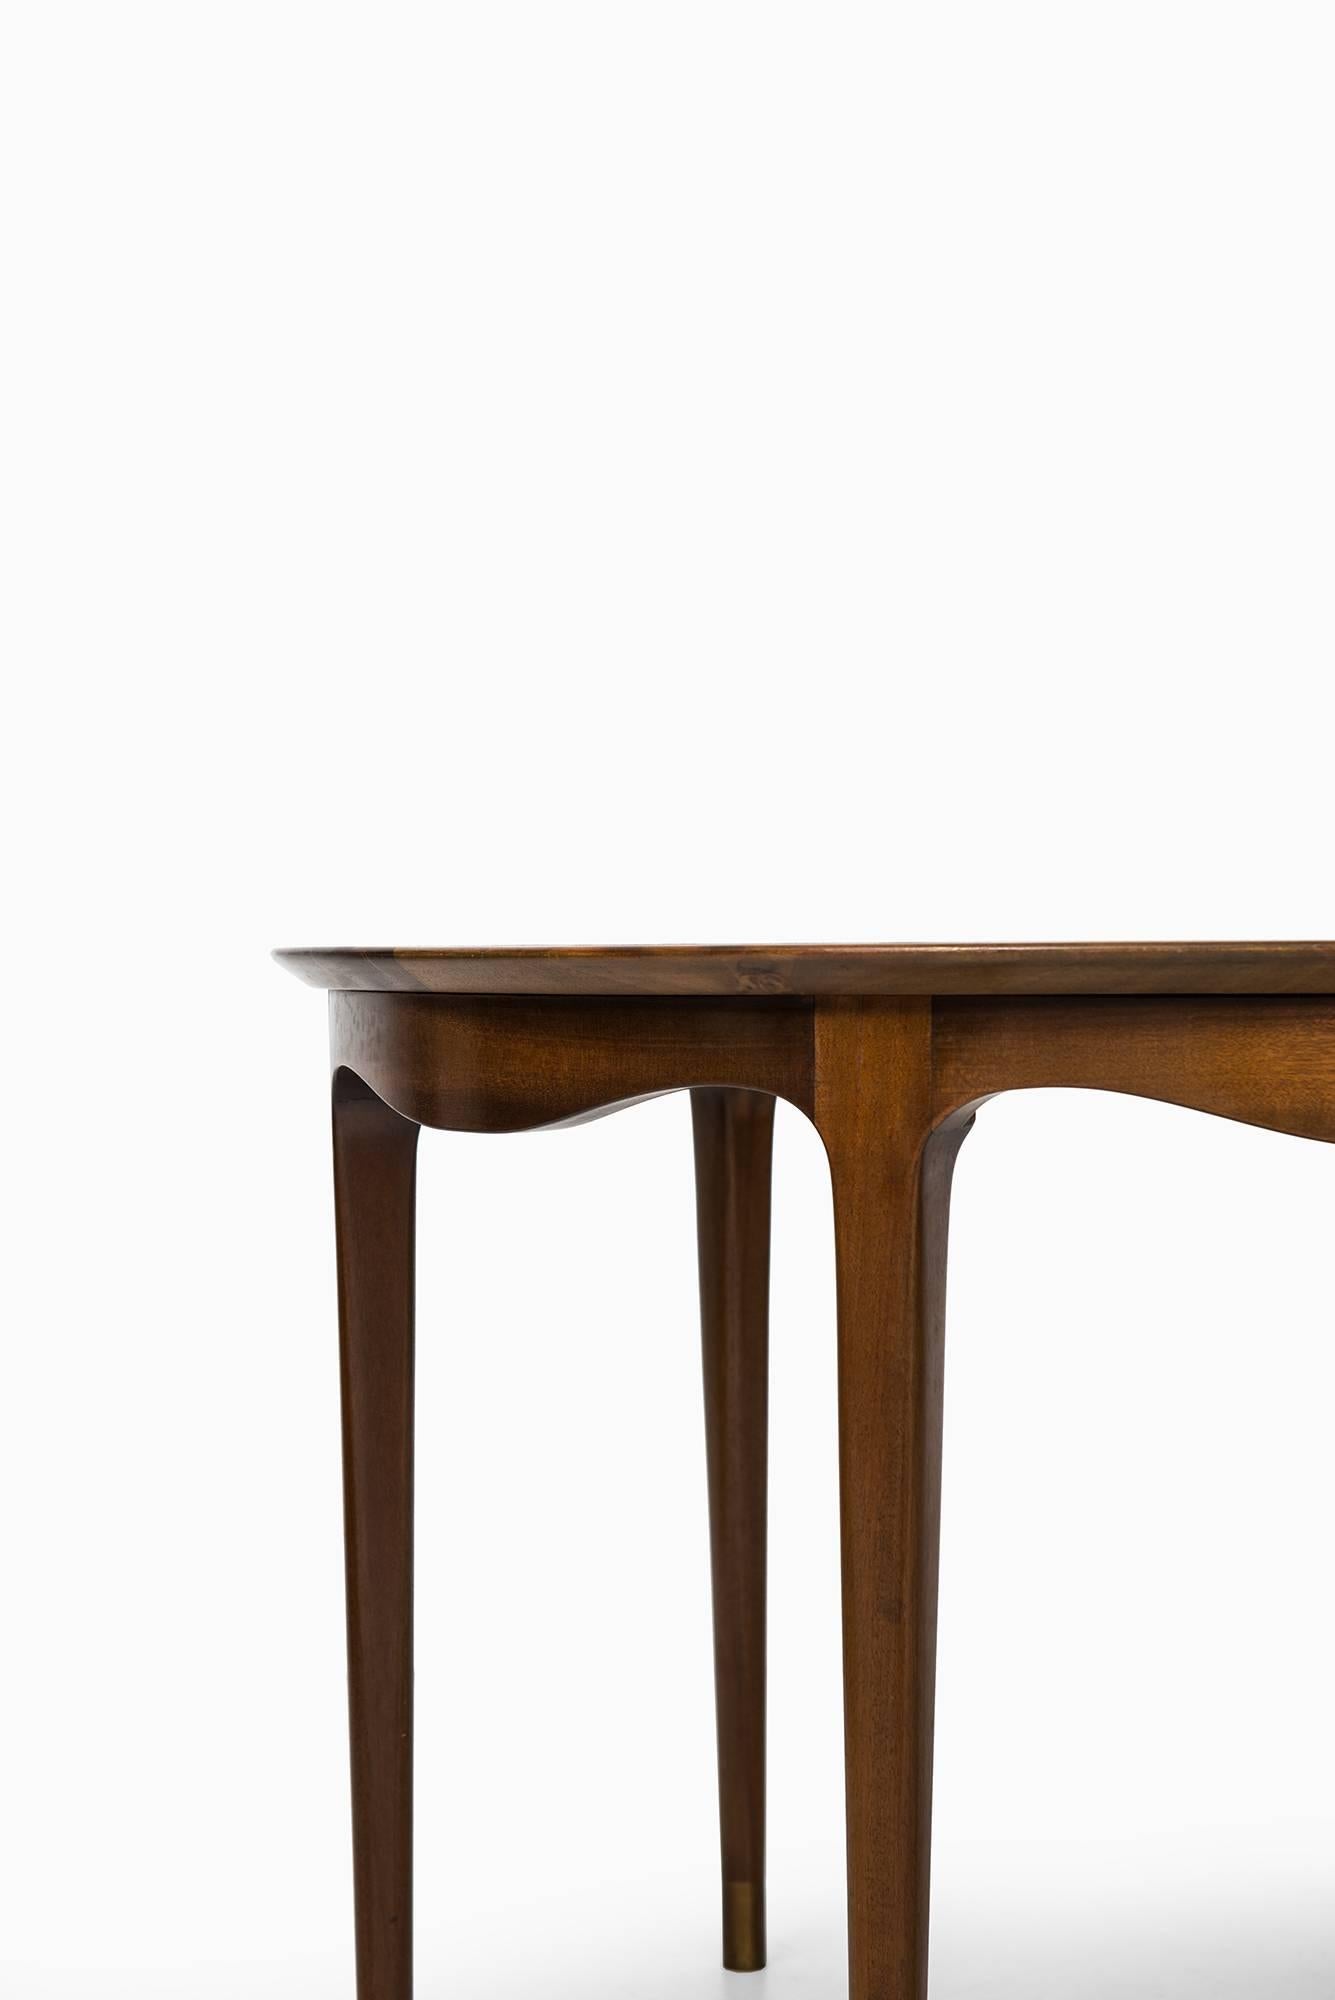 Ole Wanscher Side Table by Cabinetmaker A.J. Iversen in Denmark 2